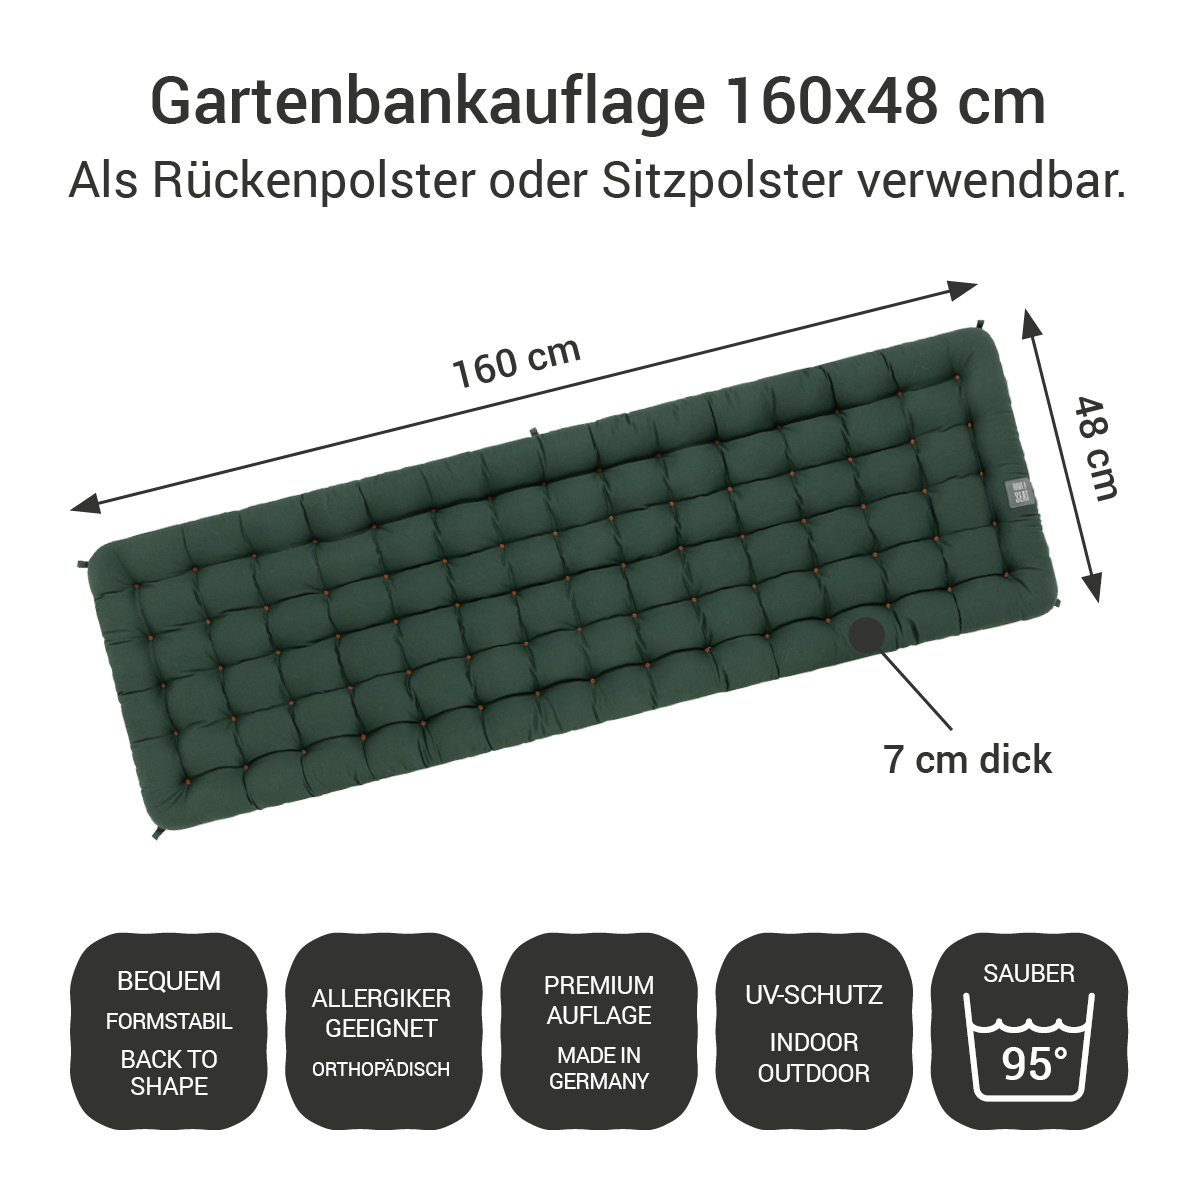 Gartenbank Auflagen (2tlg.) dunkelgrün 160x48 cm / 160 x 50 cm | bequem & orthopädisch, komplett im Ganzen waschbar bis 95°C, wetterfest, Made in Germany